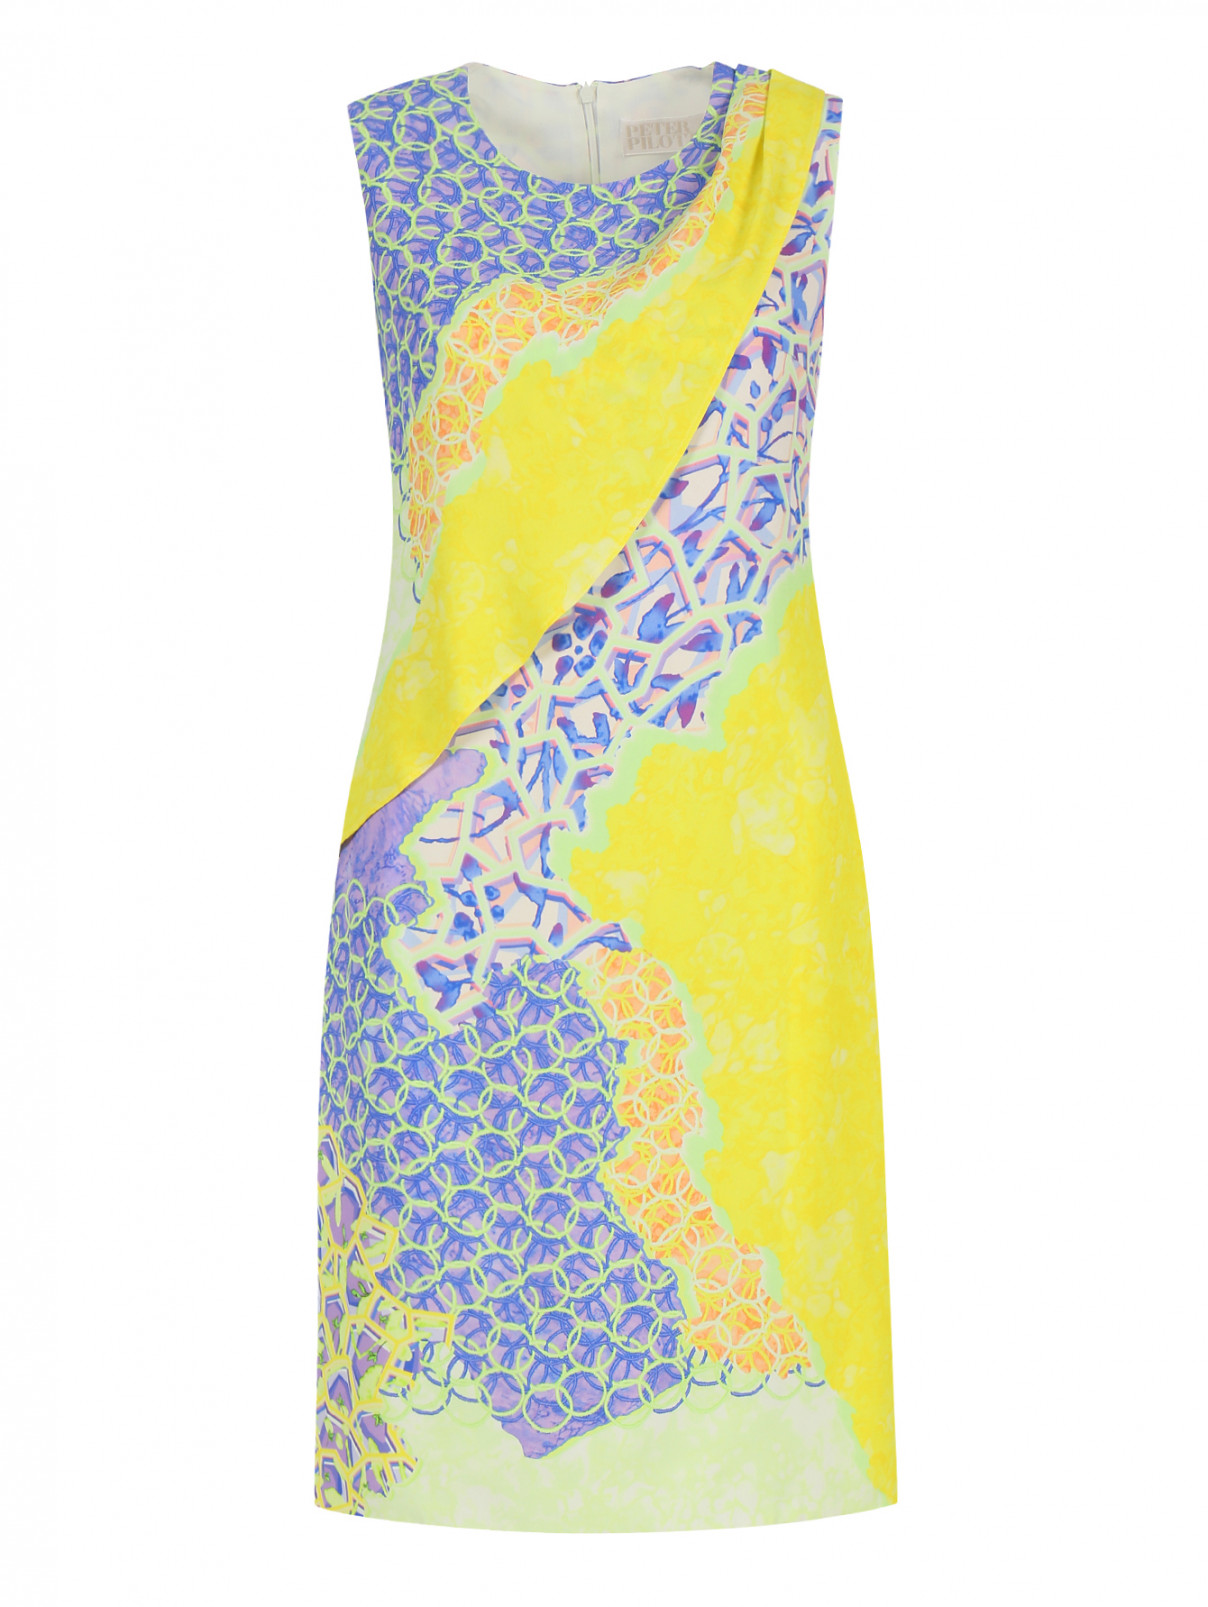 Платье с принтом и драпировкой Peter Pilotto  –  Общий вид  – Цвет:  Узор